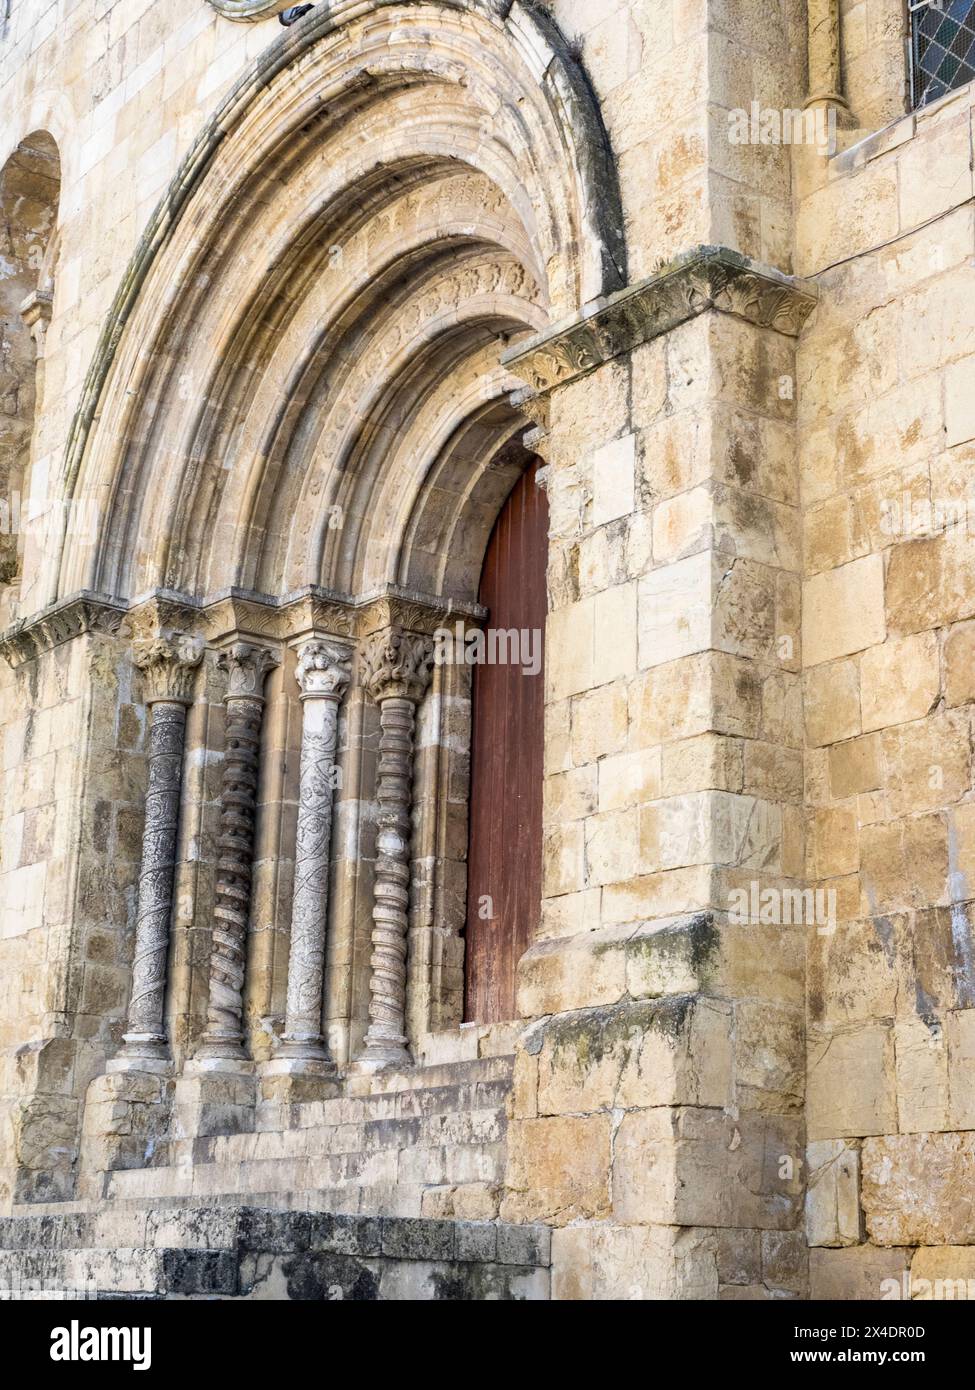 Entrance facade of Se Velha, Santa Maria de Coimbra, the old Cathedral of Coimbra. Stock Photo